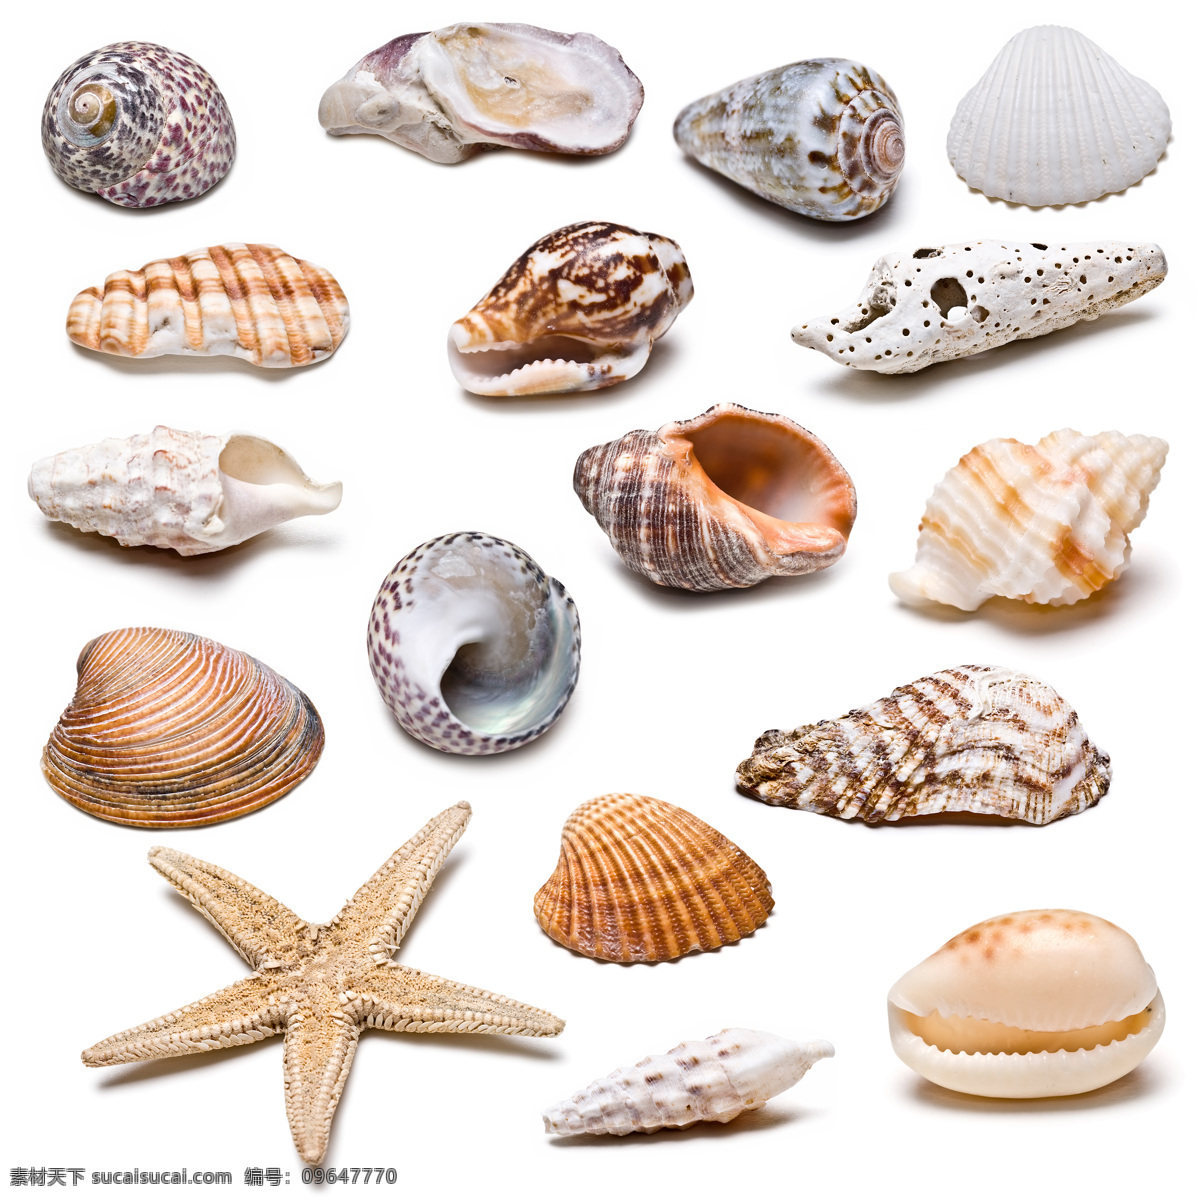 海产品 素材图片 海星 海阁 创意贝壳 贝壳 贝壳素材 贝壳摄影 个性贝壳 装饰品 水中生物 生物世界